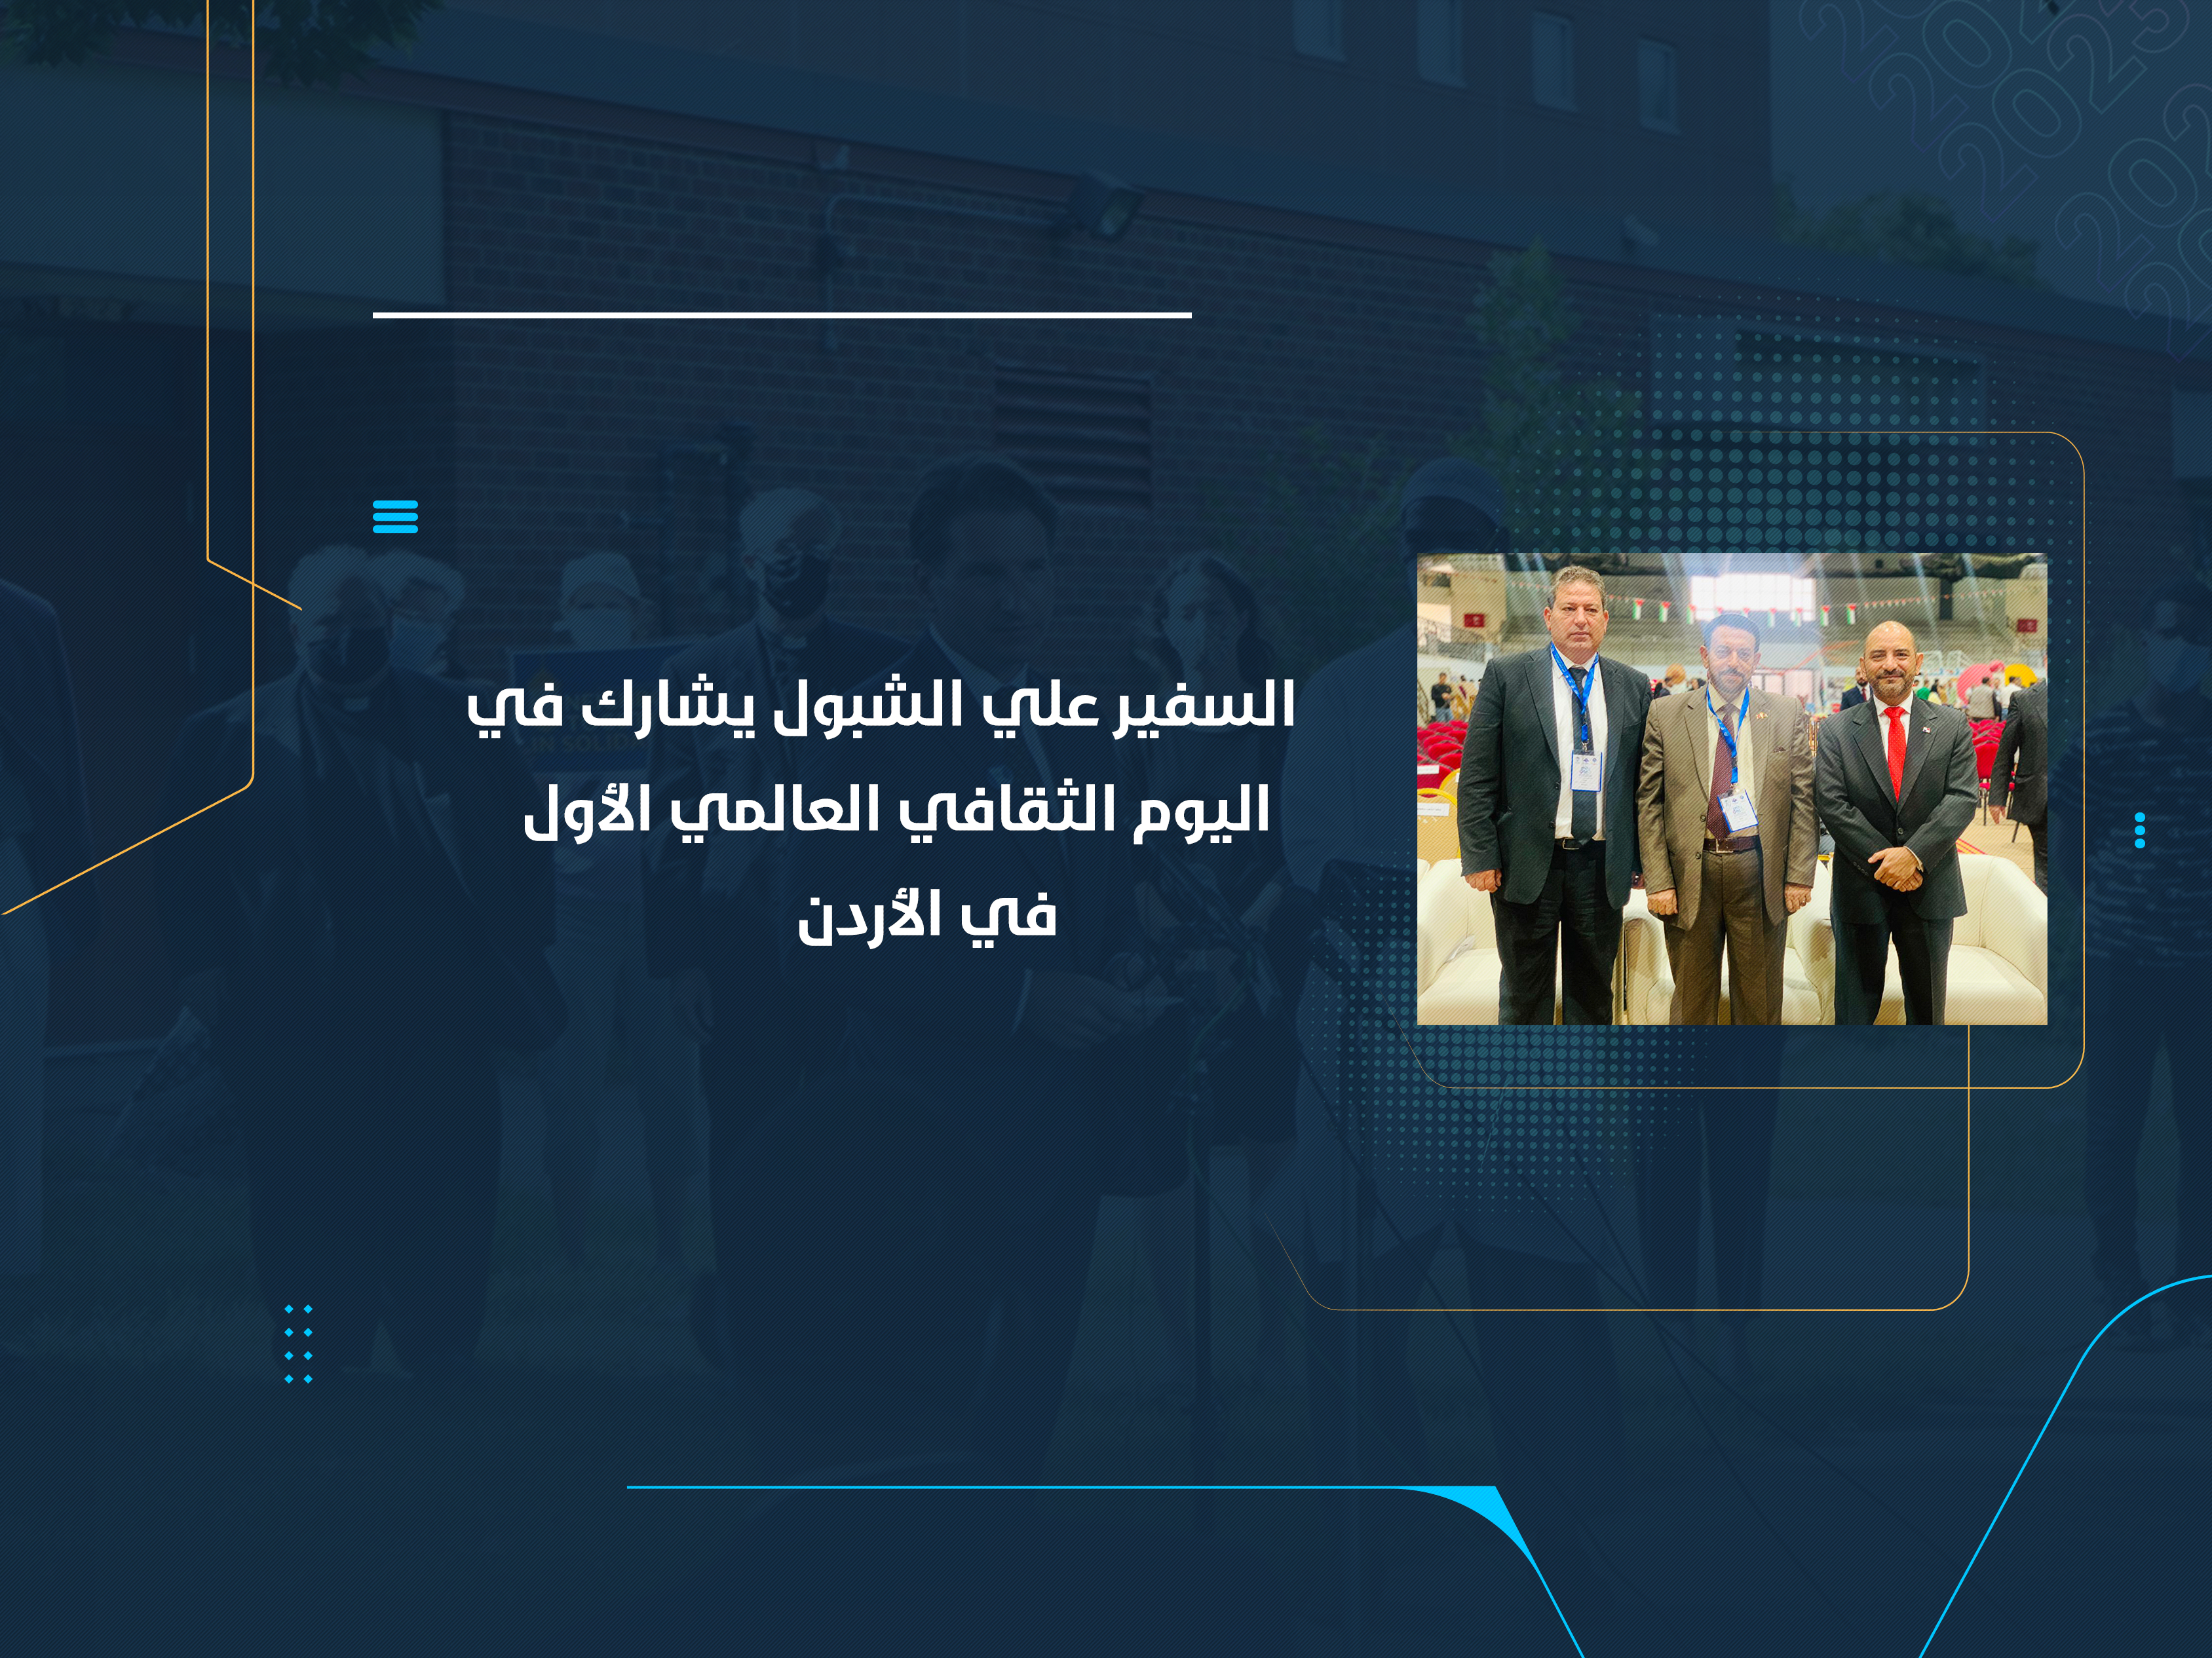 السفير علي الشبول يشارك في اليوم الثقافي العالمي الأول في الأردن